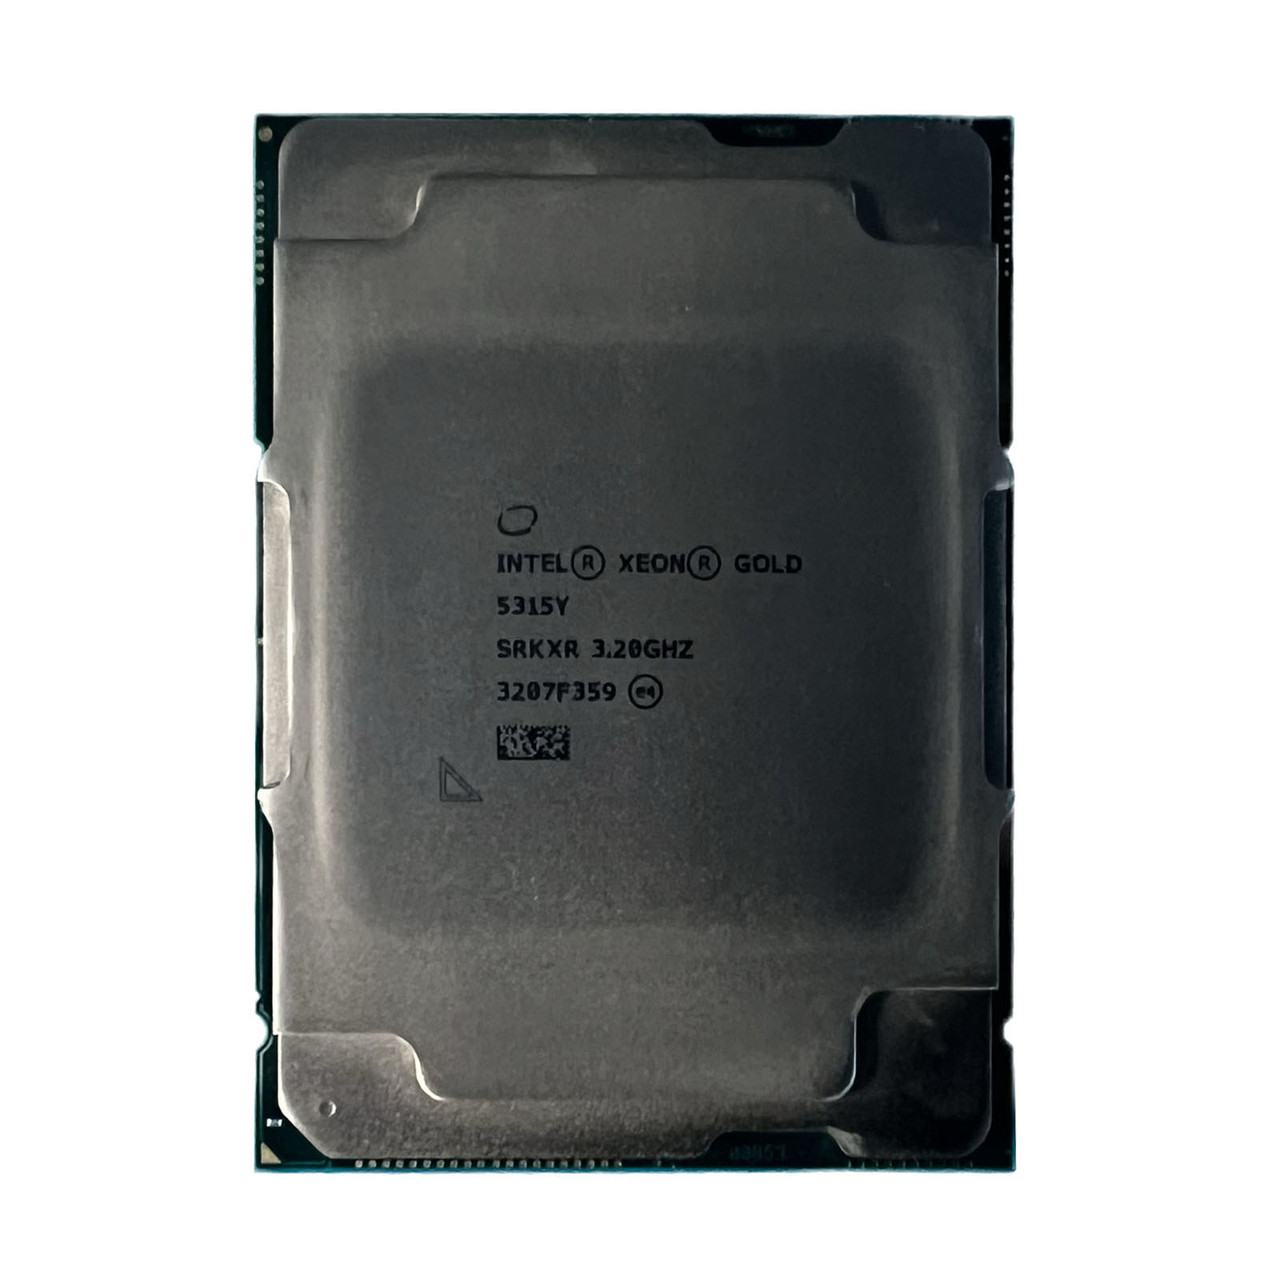 Intel SRKXR Xeon Gold 5315Y 8C 3.20Ghz 12MB Processor